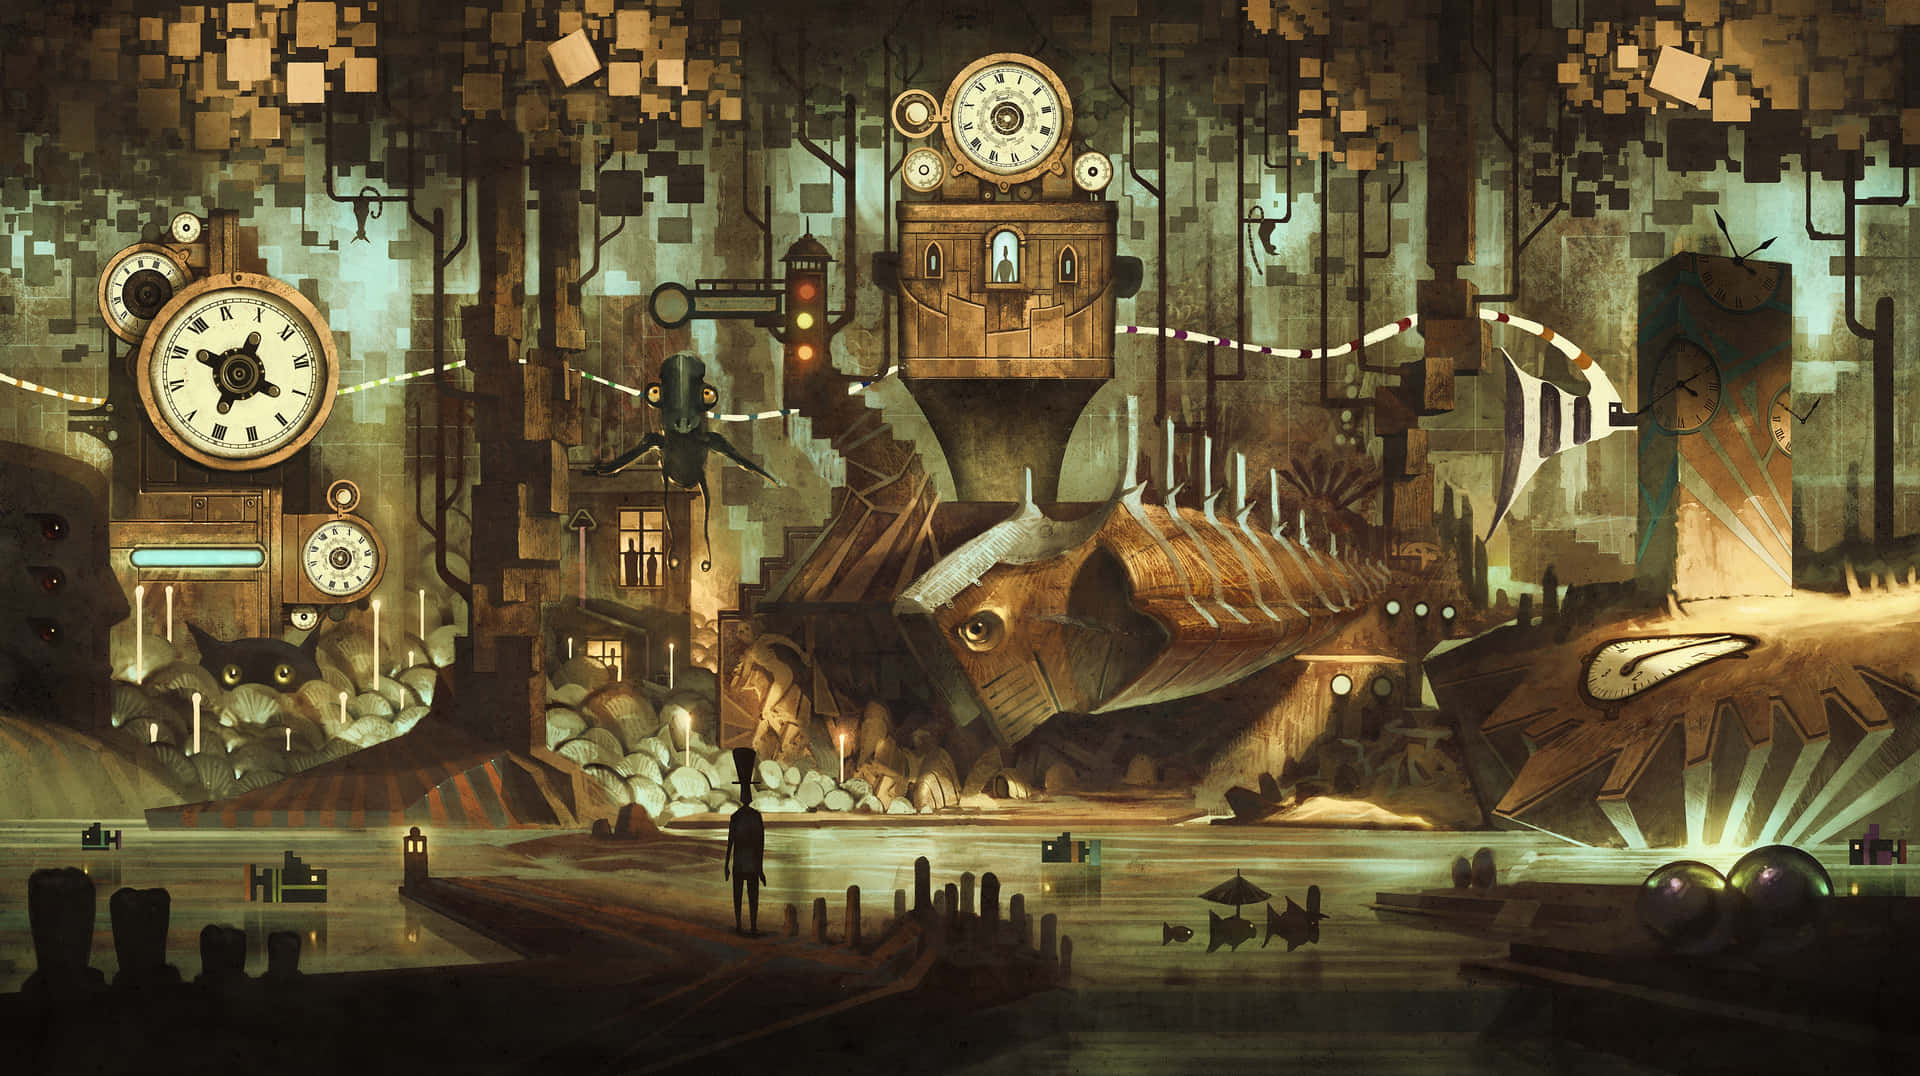 Dark Steampunk Fantasy World Wallpaper